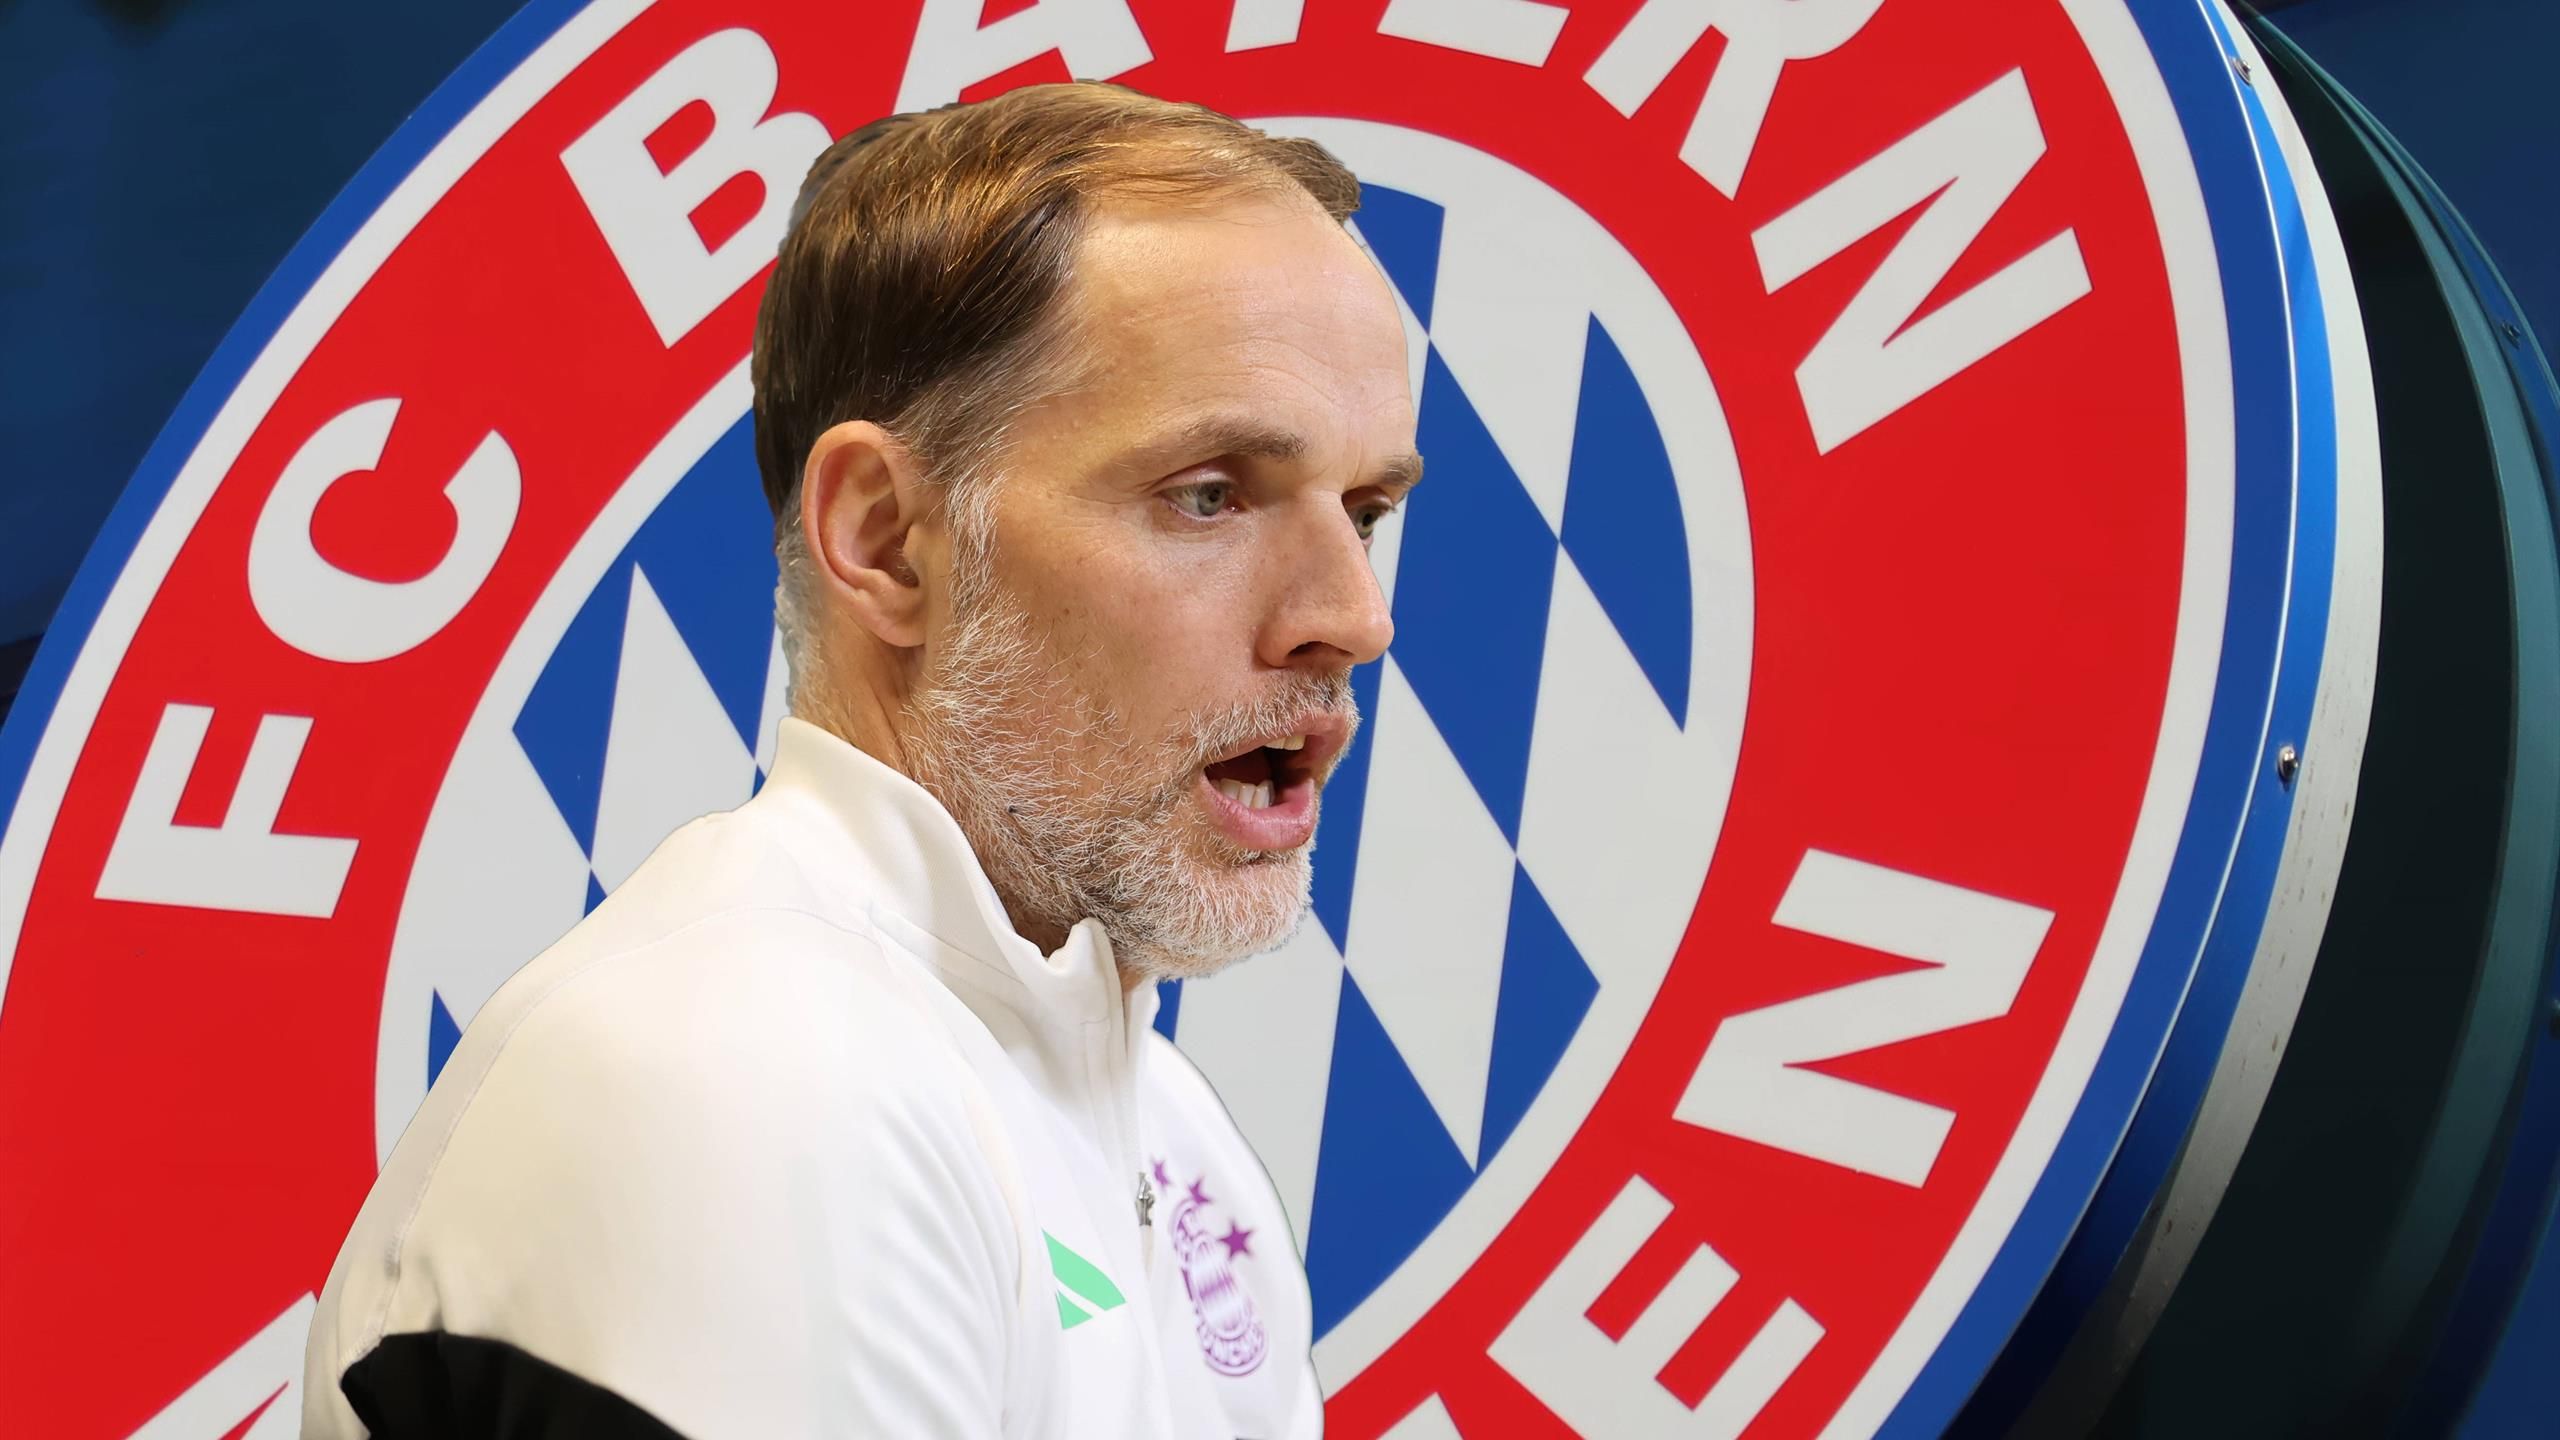 FC Bayern - Thomas Tuchel von Dietmar Hamann als “Missverständnis“ tituliert: Zweckehe statt echter Liebe - Eurosport